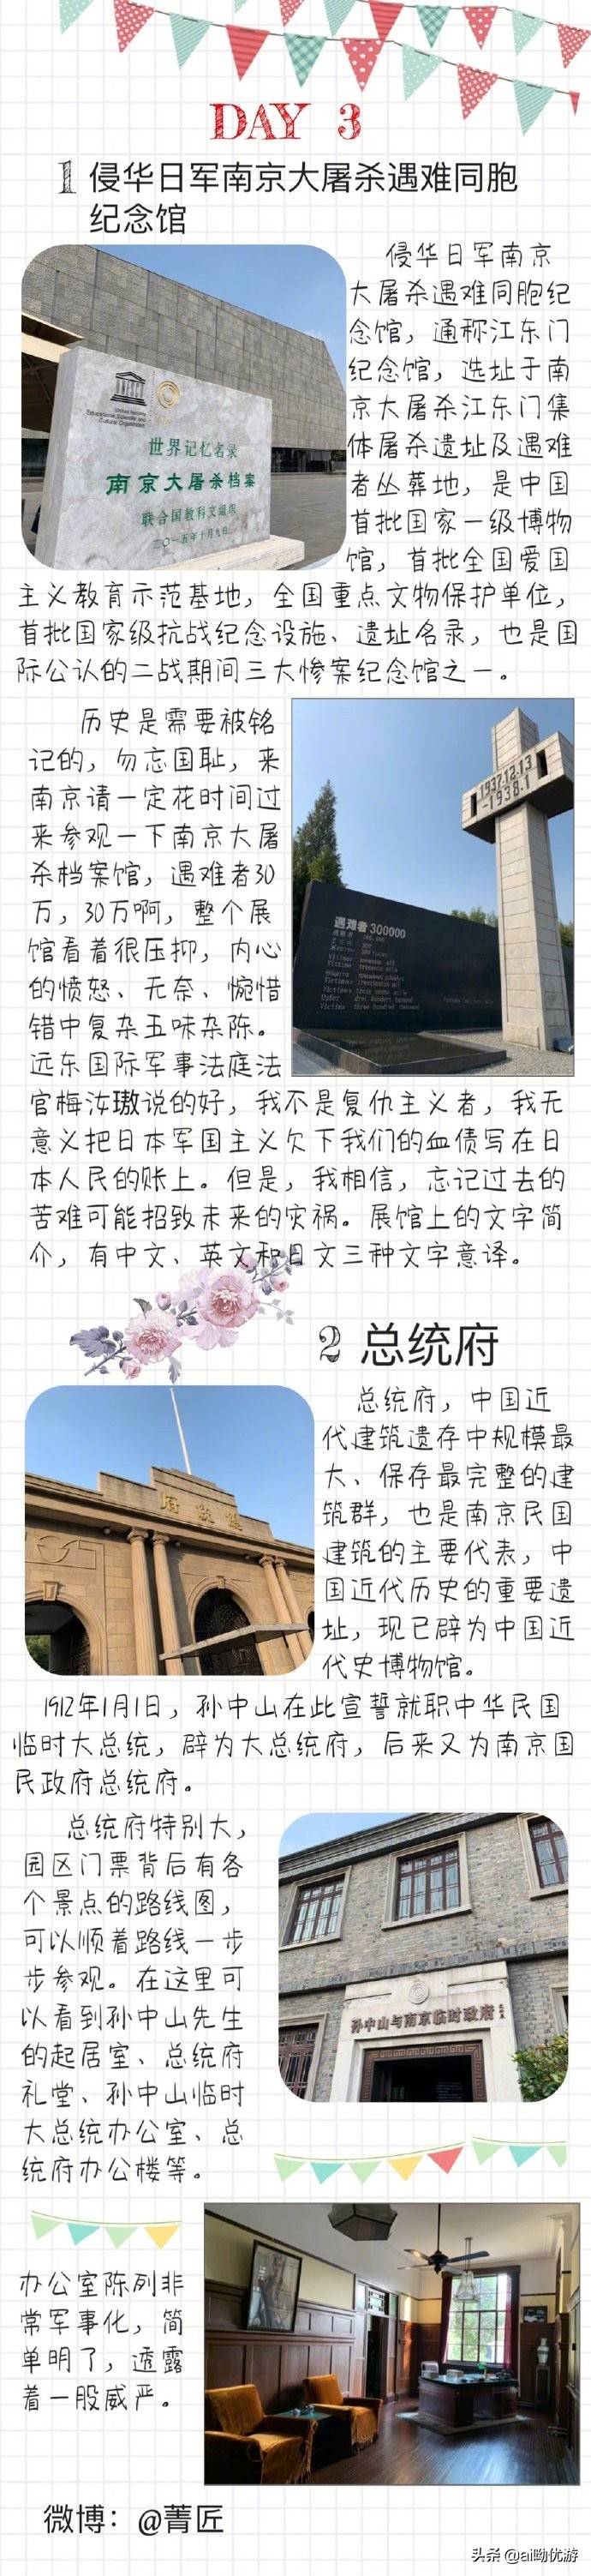 南京一座拥有历史文化底蕴的城市三天两晚自由行旅游攻略